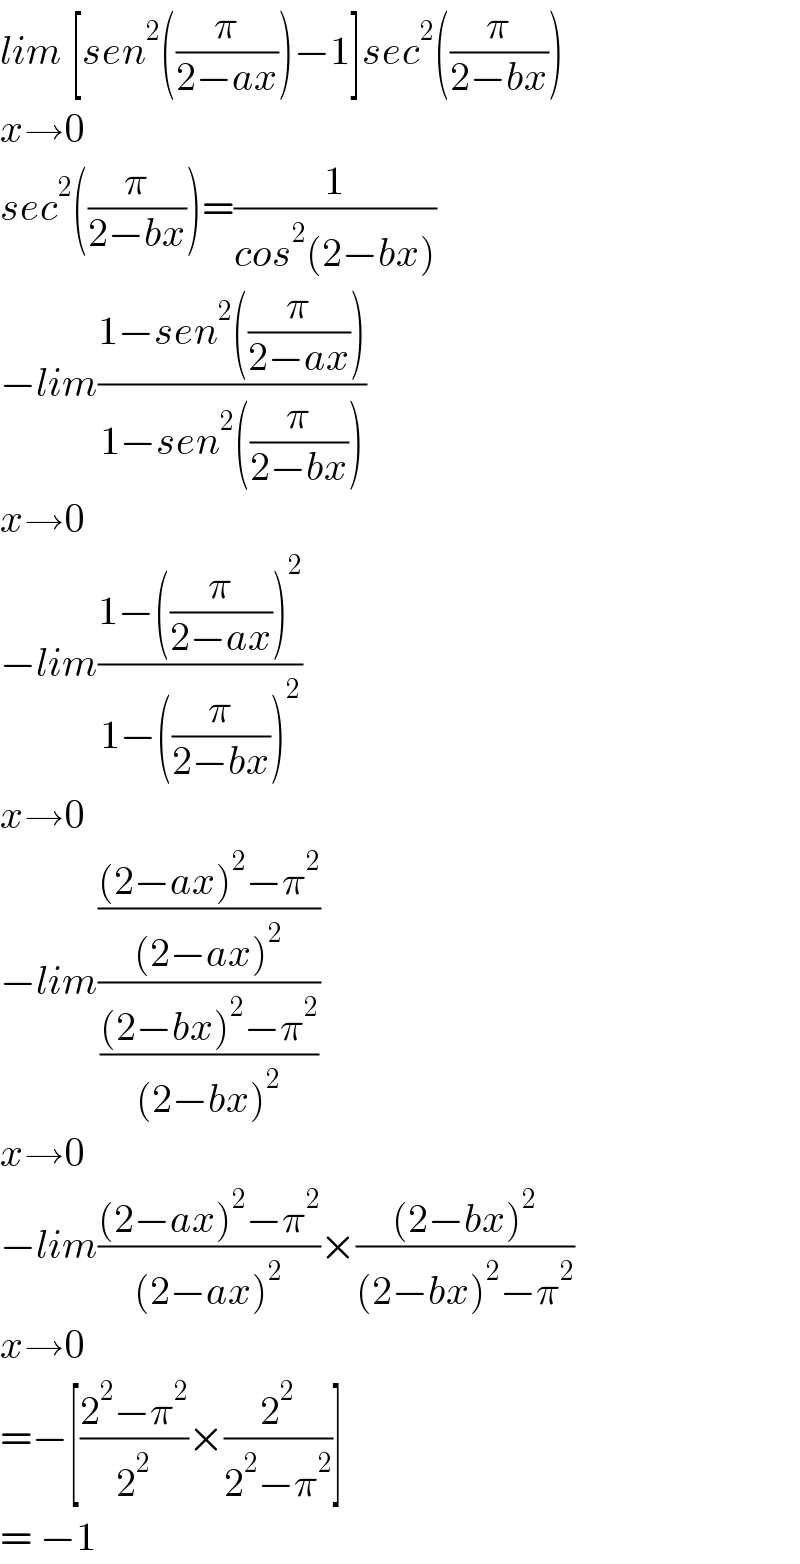 lim [sen^2 ((π/(2−ax)))−1]sec^2 ((π/(2−bx)))  x→0  sec^2 ((π/(2−bx)))=(1/(cos^2 (2−bx)))  −lim((1−sen^2 ((π/(2−ax))))/(1−sen^2 ((π/(2−bx)))))  x→0  −lim((1−((π/(2−ax)))^2 )/(1−((π/(2−bx)))^2 ))  x→0  −lim((((2−ax)^2 −π^2 )/((2−ax)^2 ))/(((2−bx)^2 −π^2 )/((2−bx)^2 )))  x→0  −lim(((2−ax)^2 −π^2 )/((2−ax)^2 ))×(((2−bx)^2 )/((2−bx)^2 −π^2 ))  x→0  =−[((2^2 −π^2 )/2^2 )×(2^2 /(2^2 −π^2 ))]  = −1  